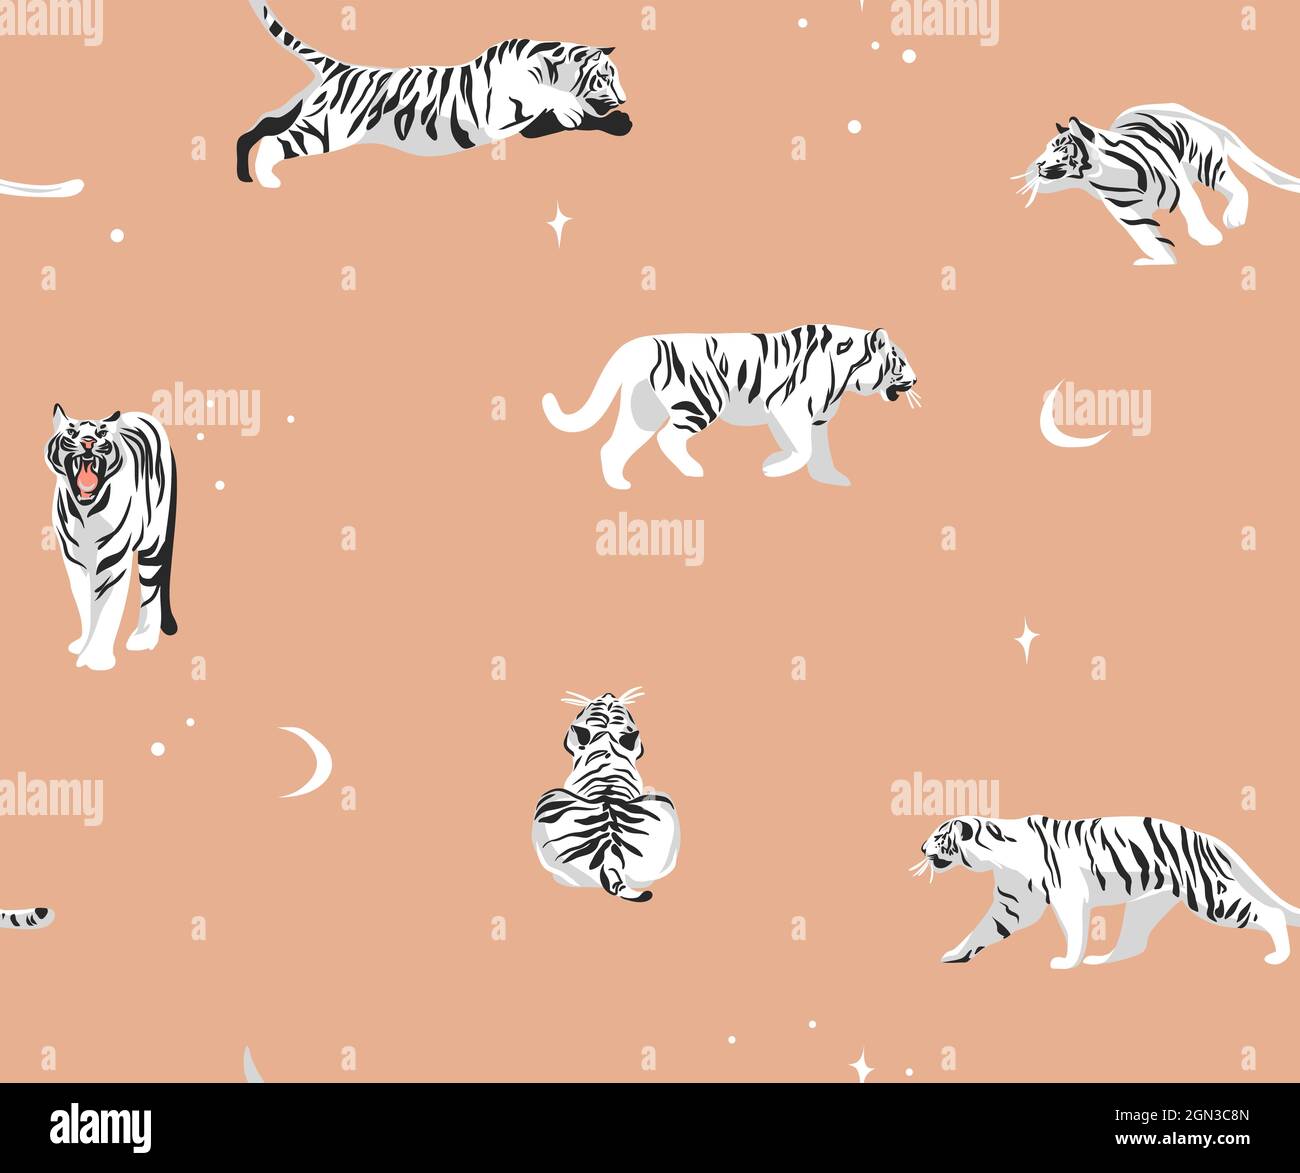 Dessin à la main vecteur résumé stock d'illustrations graphiques modernes, safari bohème imprimé contemporain sans couture avec animaux exotiques tigres sauvages Illustration de Vecteur